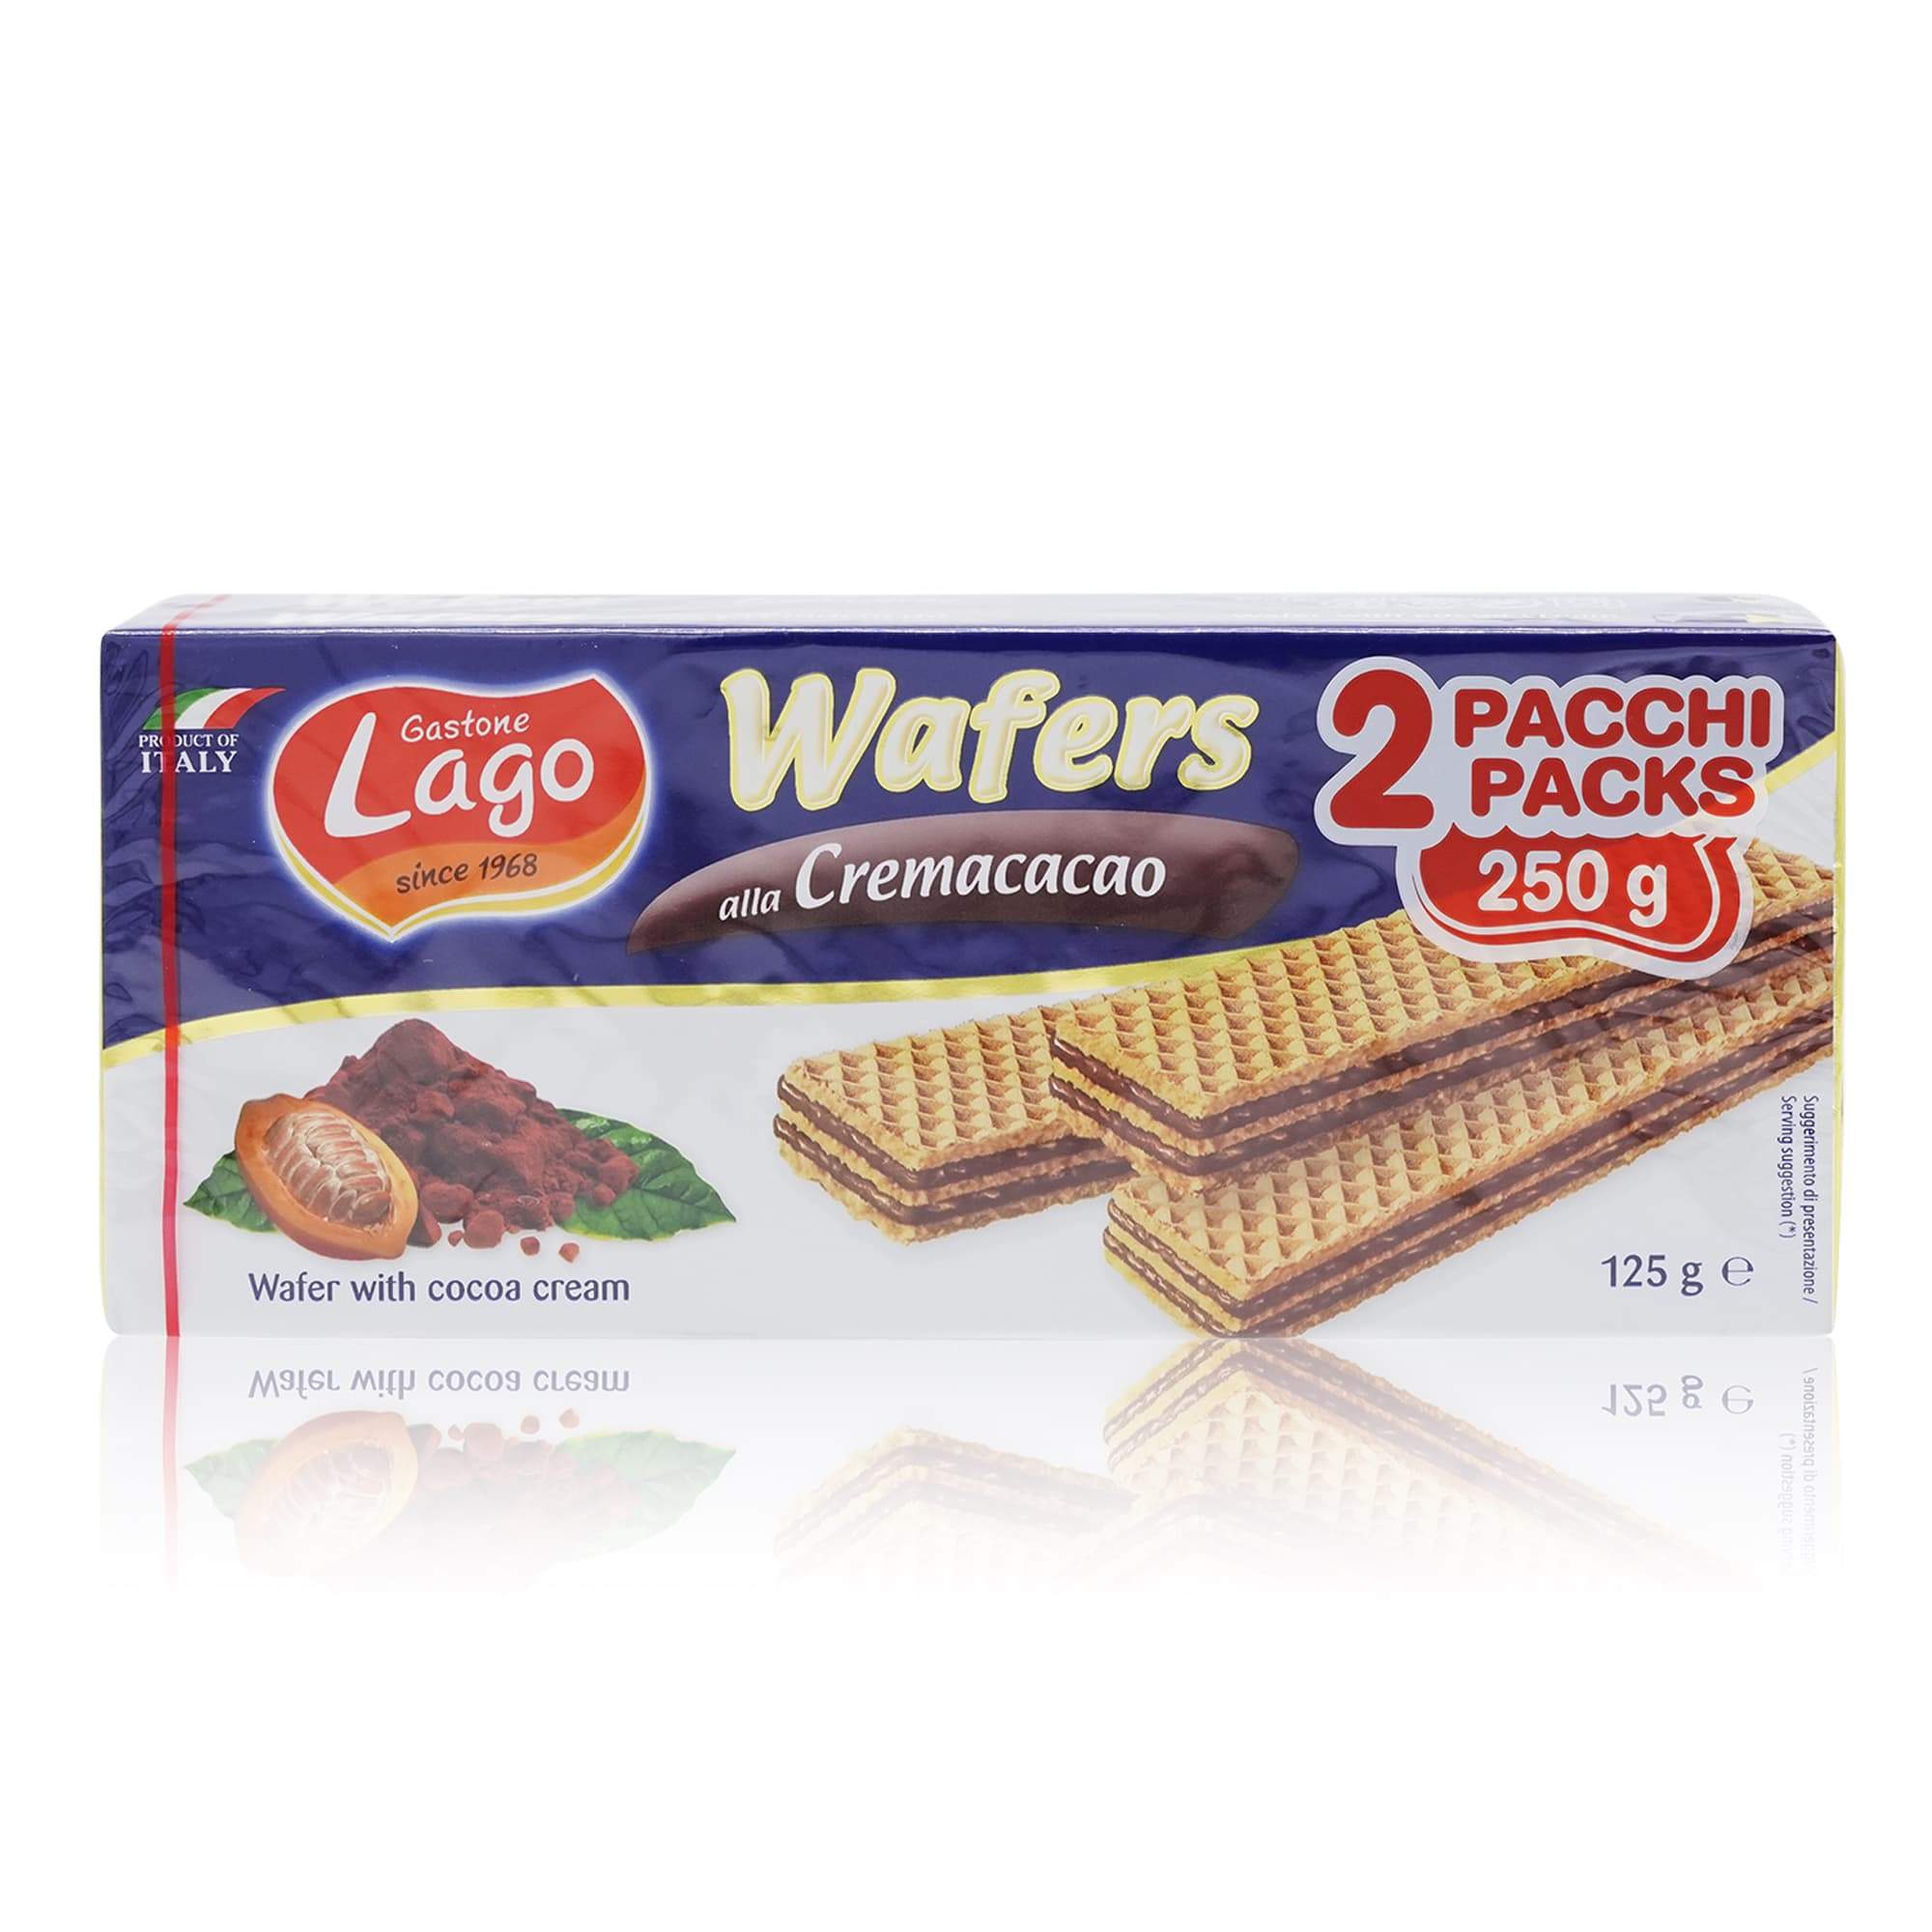 GASTONE LAGO Wafers doppio pacco Cremacacao – Neapolitaner Kakaofüllung - 0,250kg